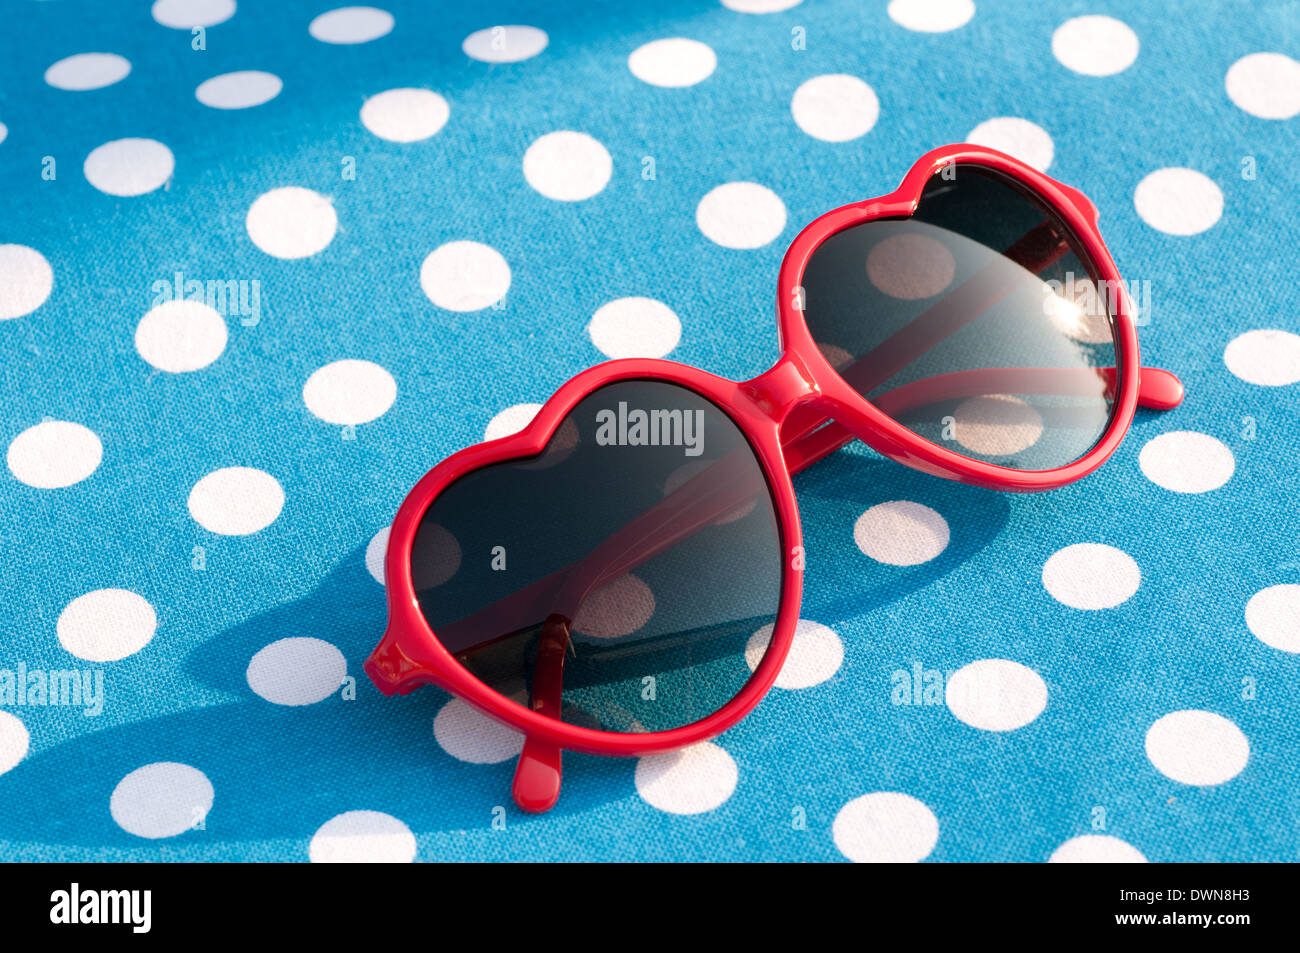 Red Heart shaped Sonnenbrille auf einem blau gepunkteten Tischmatte, 80er  Jahre style Sonnenbrillen, Vintage Sonnenbrillen Zubehör Konzept  Stockfotografie - Alamy